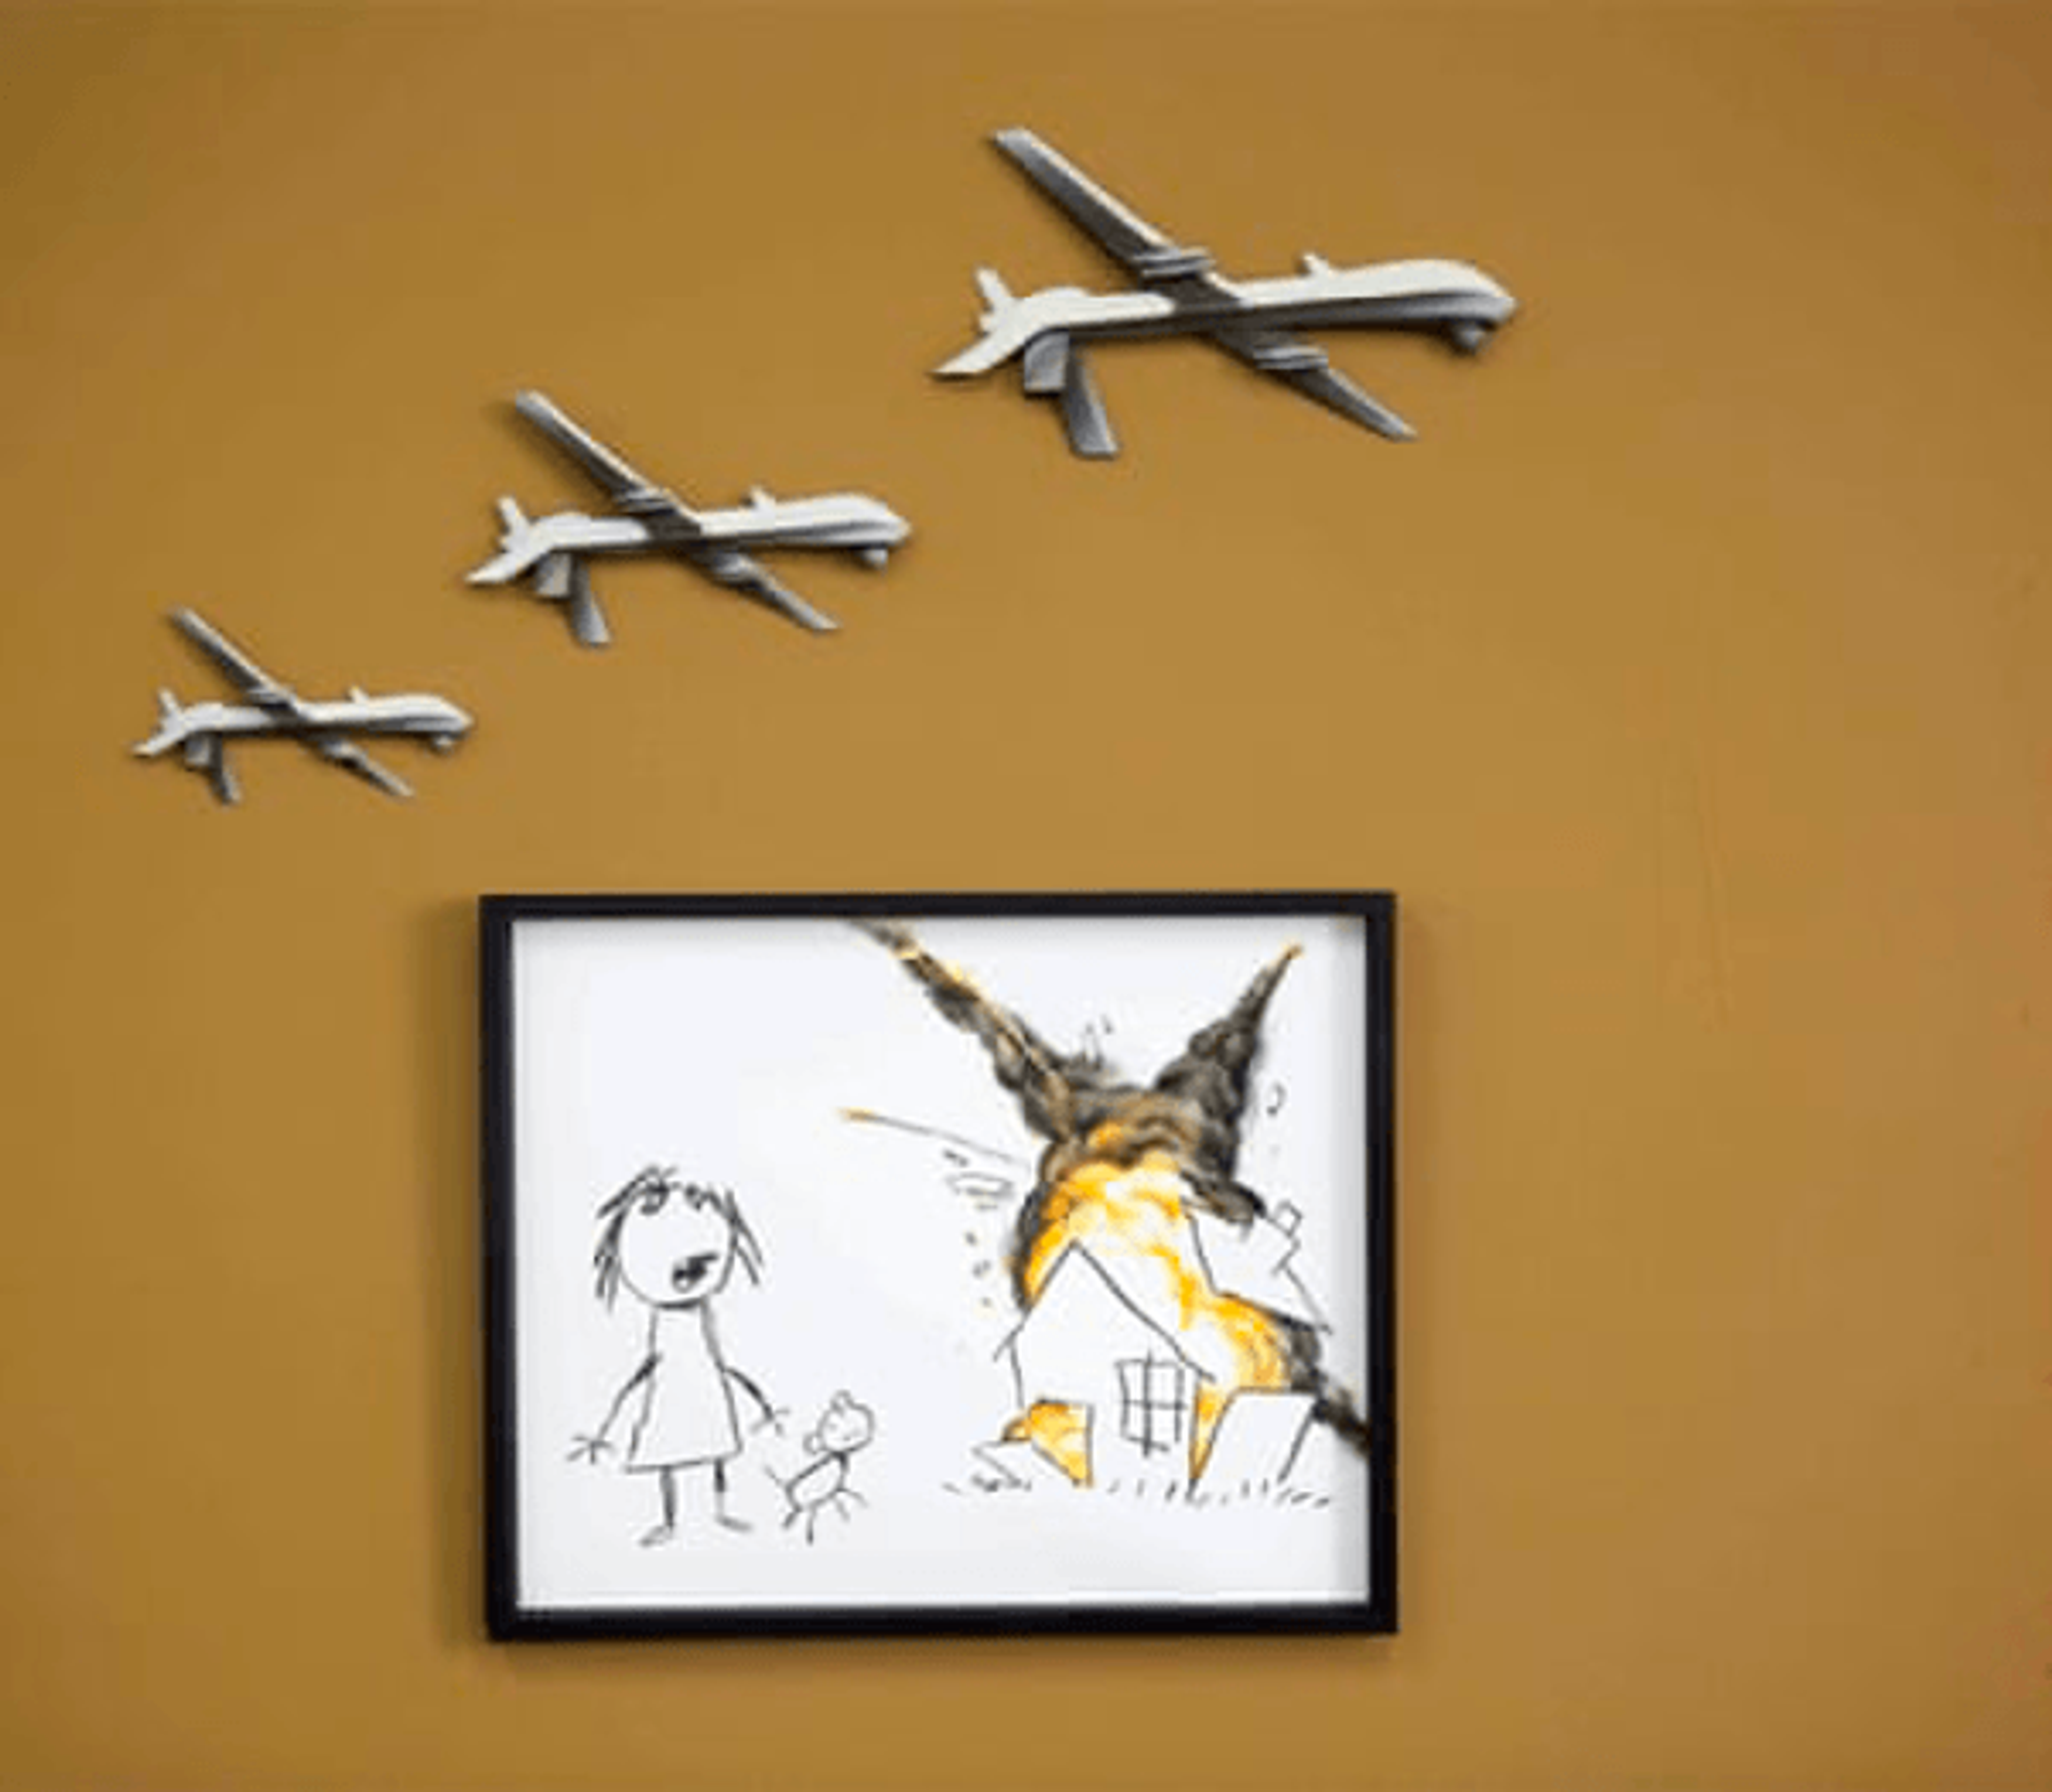 Civilian Drone Strike by Banksy - MyArtBroker